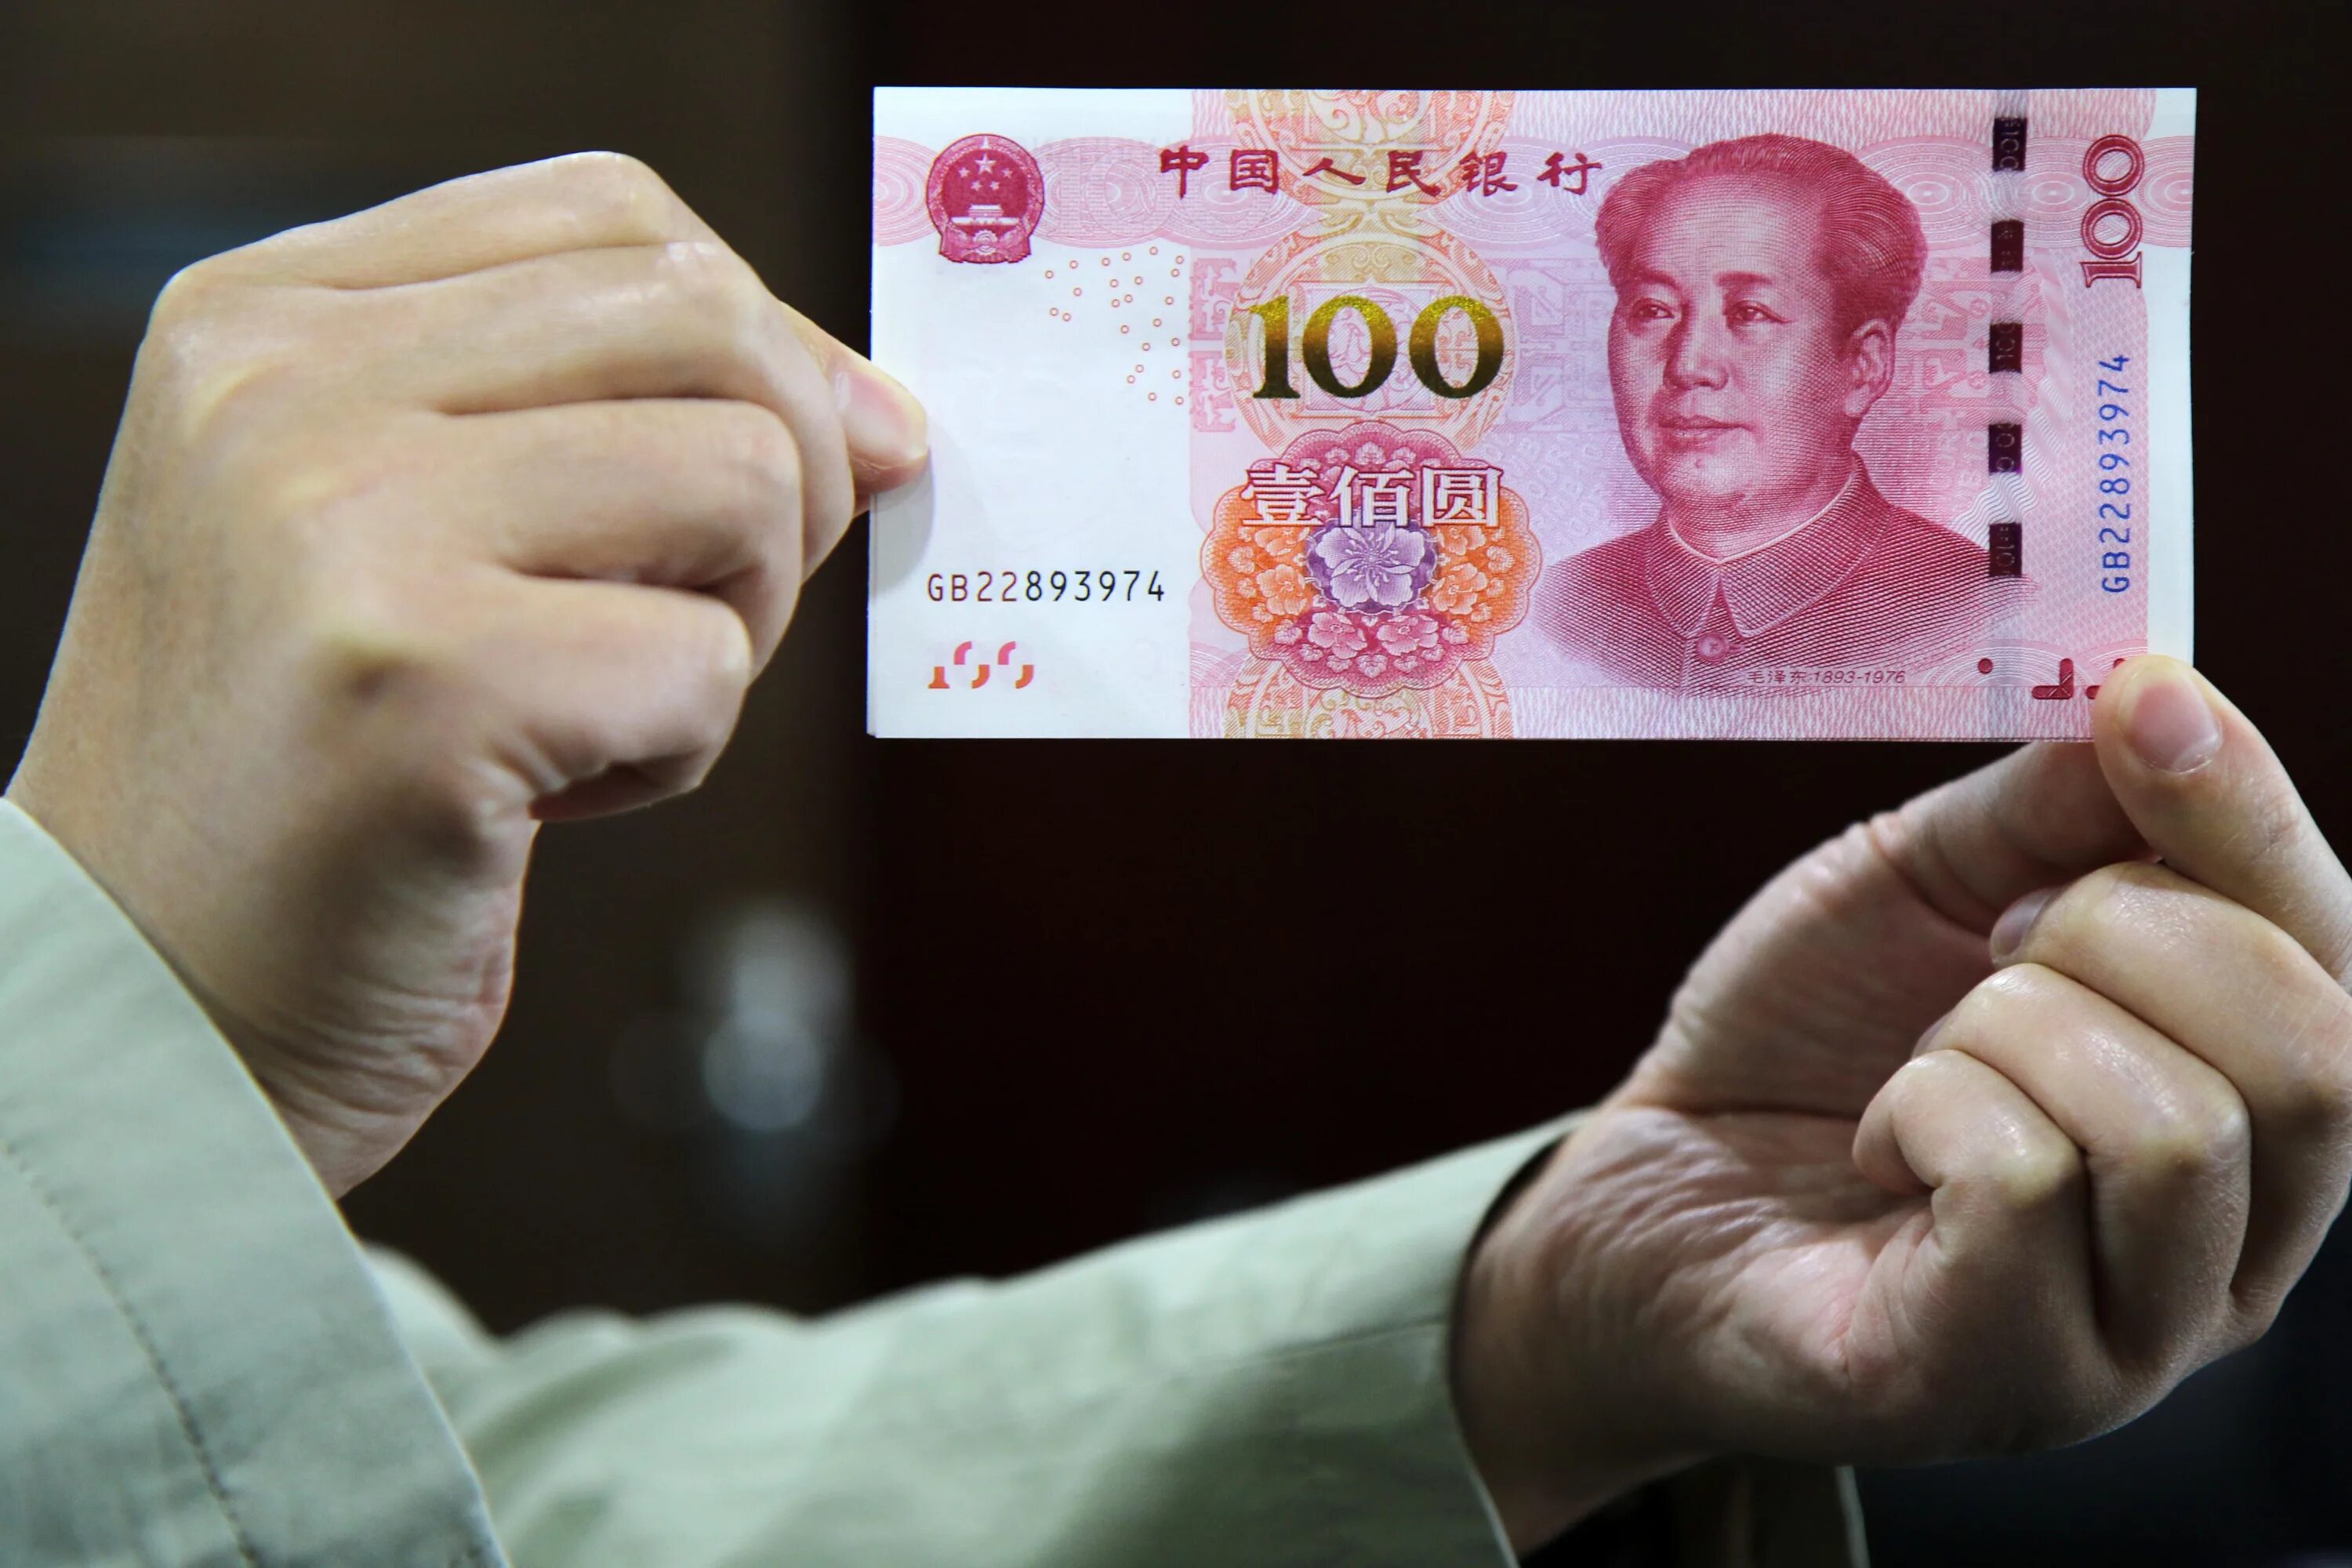 Валюта Китая юань. Юань купюры. Современные китайские деньги. Юань (валюта).